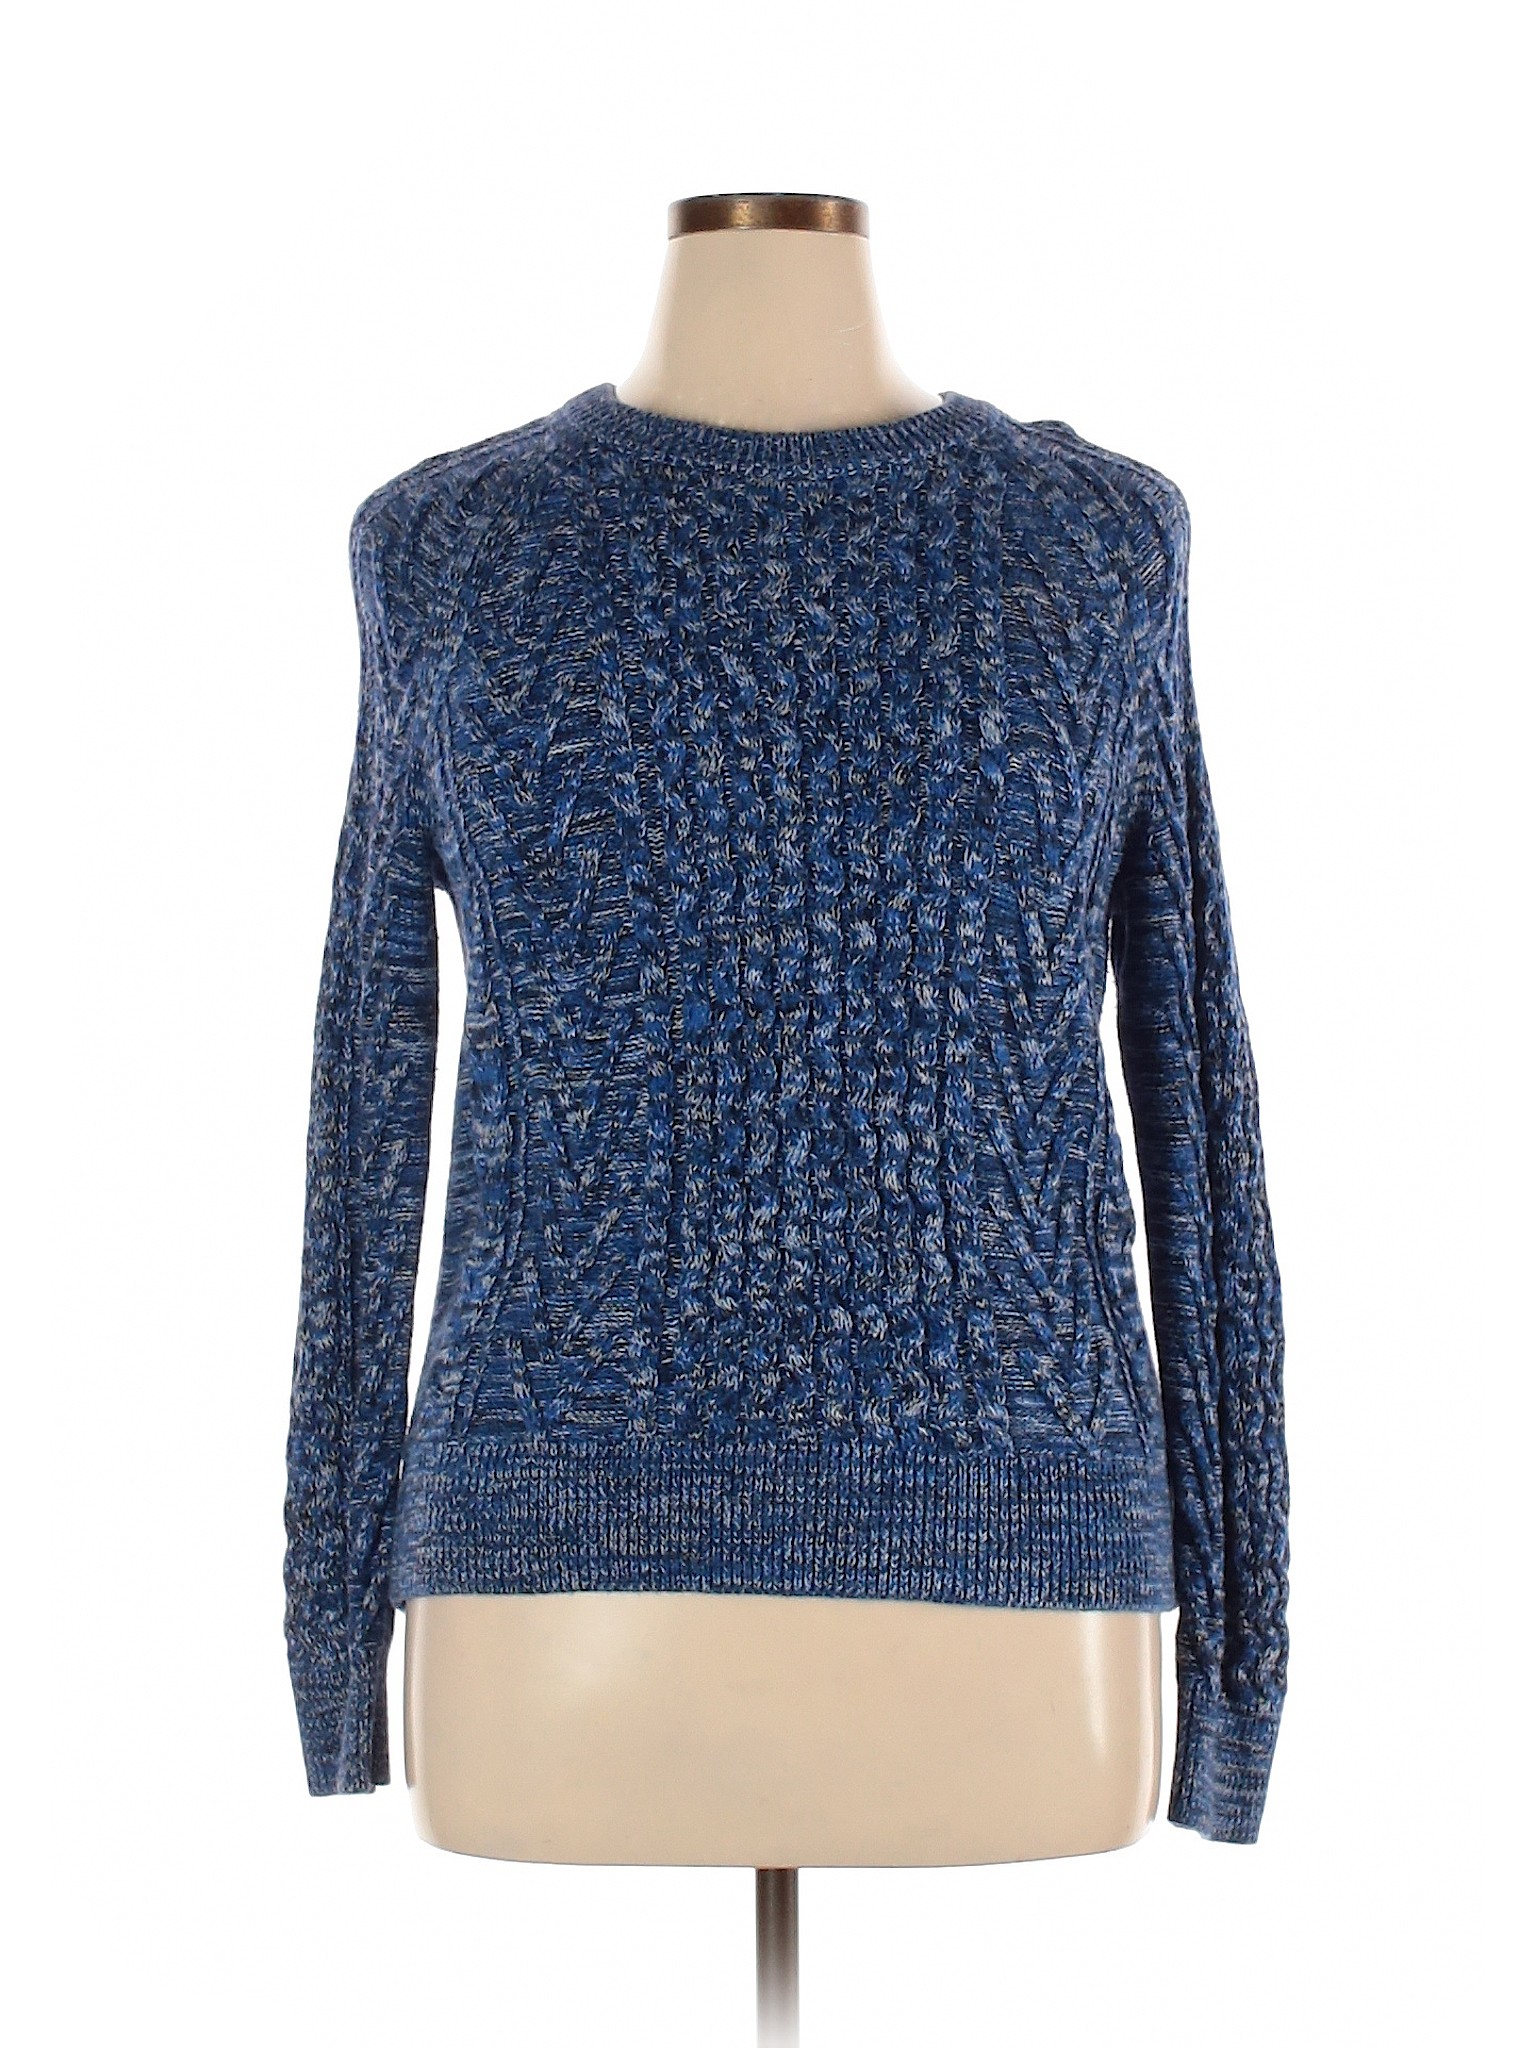 Gap Women Blue Pullover Sweater L | eBay